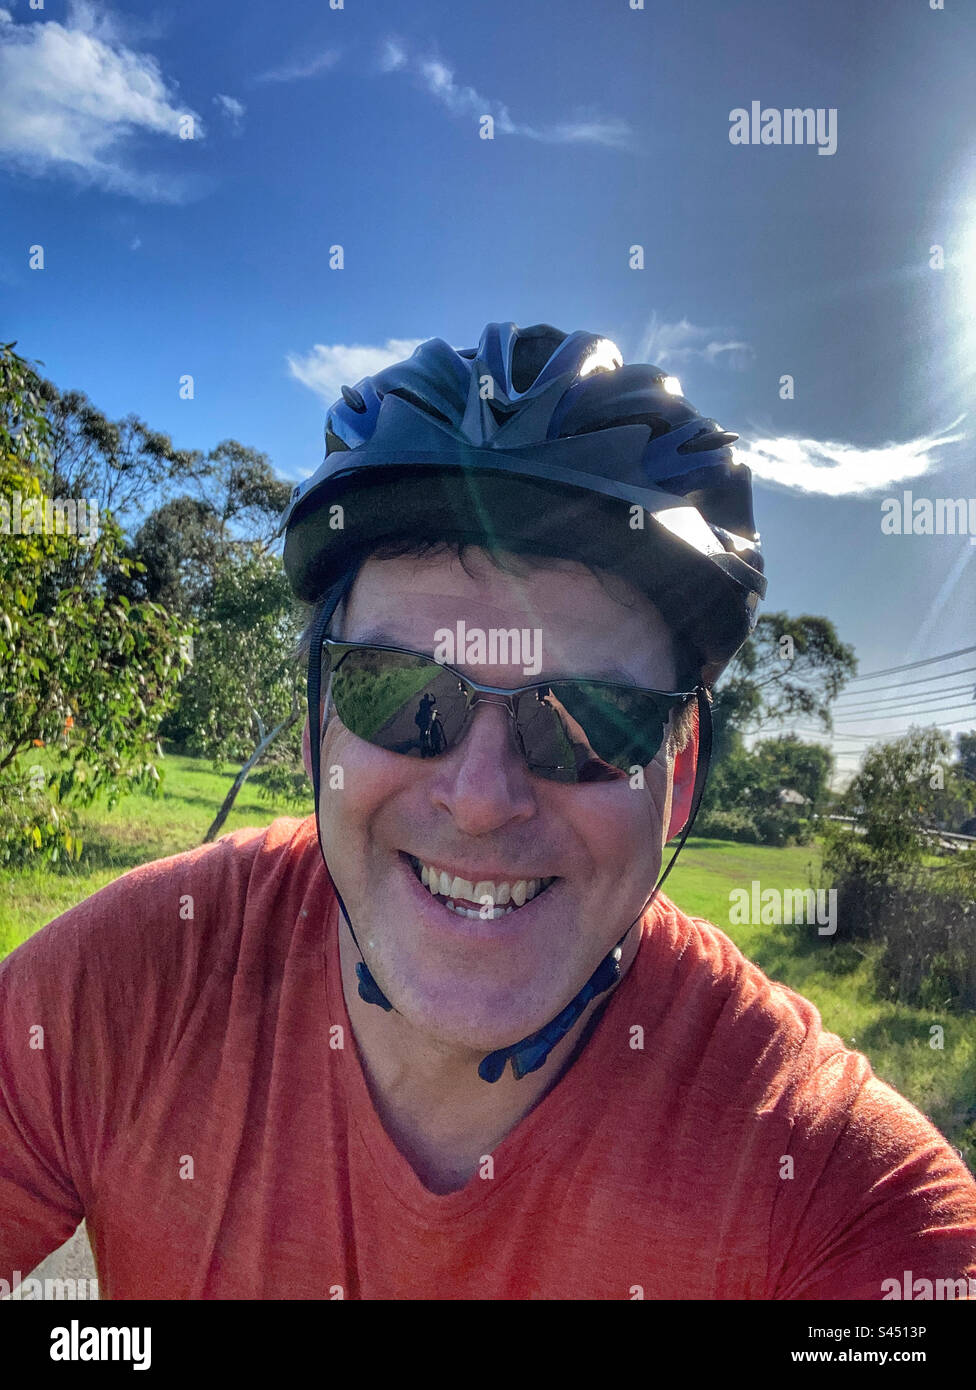 Cycliste selfie Seaford Wetlands Melbourne Victoria Australie Banque D'Images